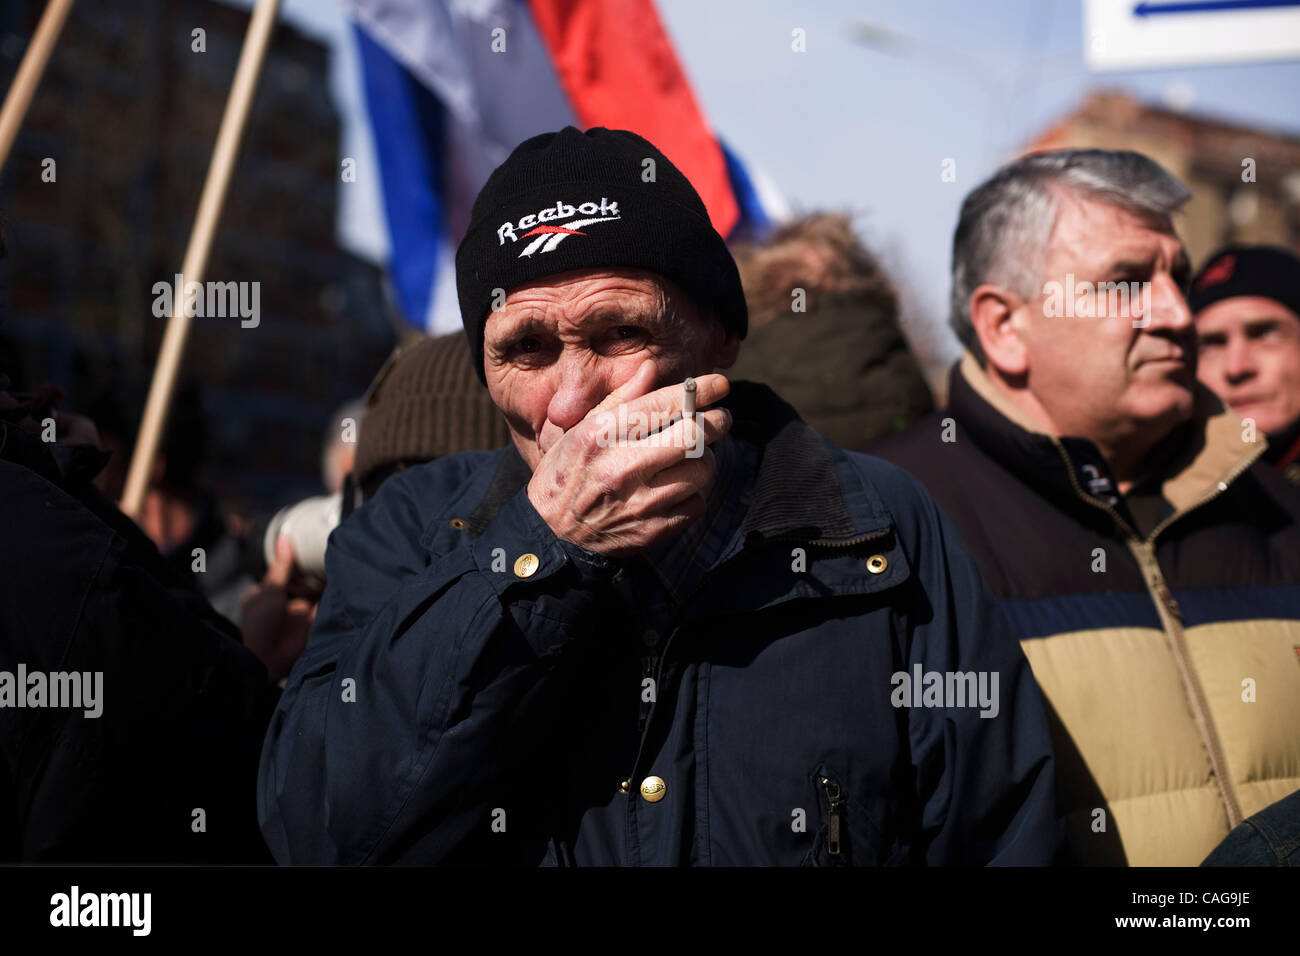 18 févr. 2008 - Mitrovica, Kosovo - un homme serbe pleure à serbes' protester contre l'indépendance du Kosovo et la reconnaissance internationale de la nouvelle nation dans le côté nord de Mitrovica. Les Serbes du Kosovo a déclenché des explosions sporadiques et incendié un poste de contrôle pour symboliser Banque D'Images